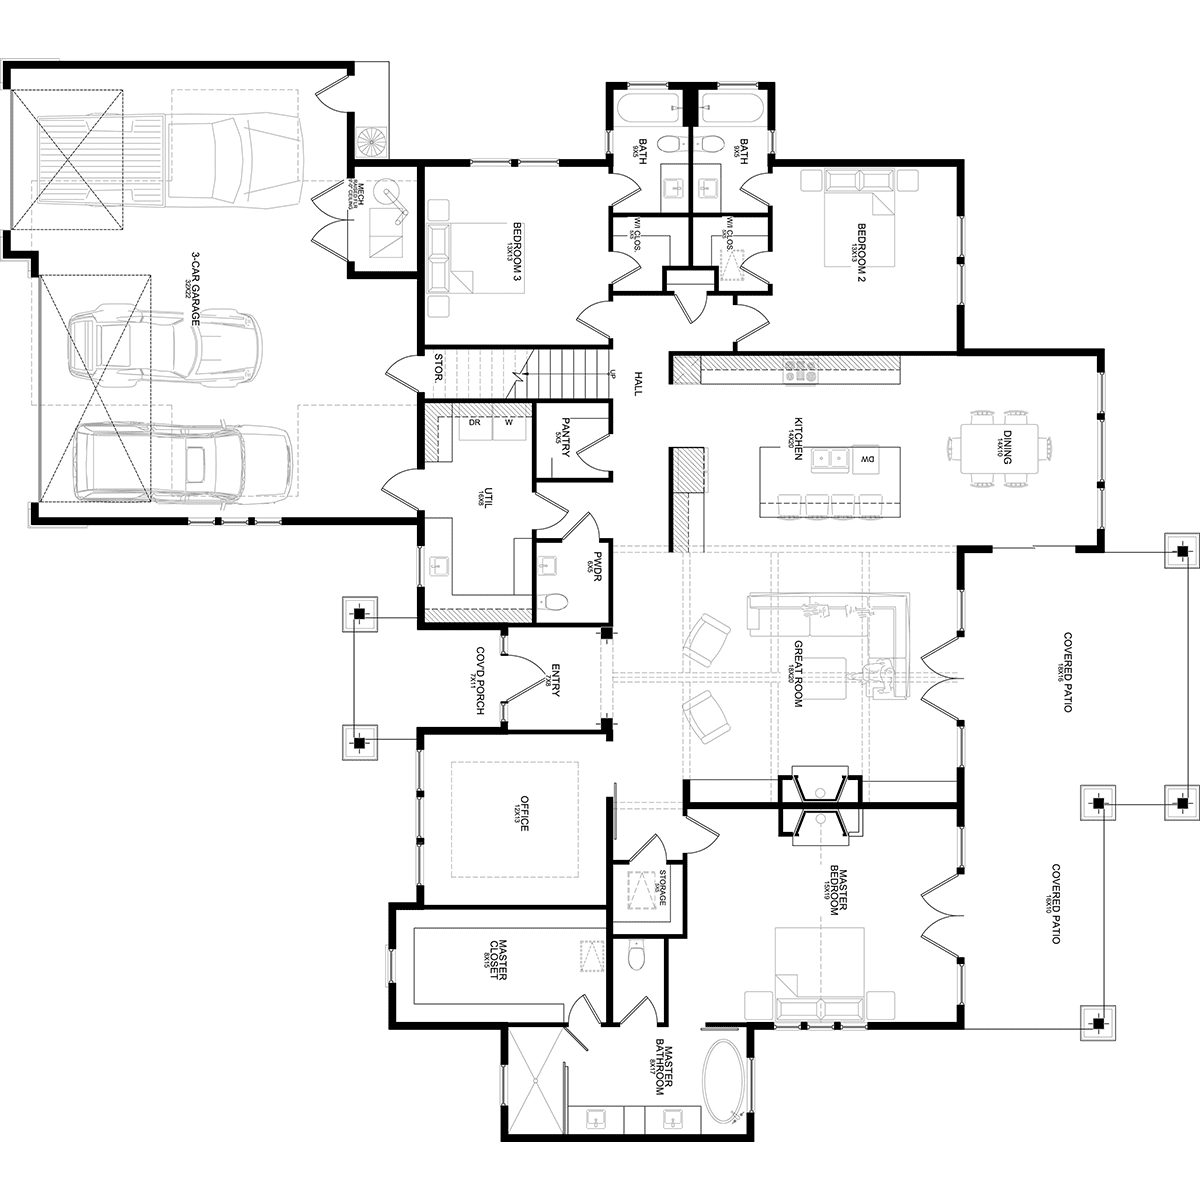 The Timber Crest Main Floor Plan - Hayden, ID